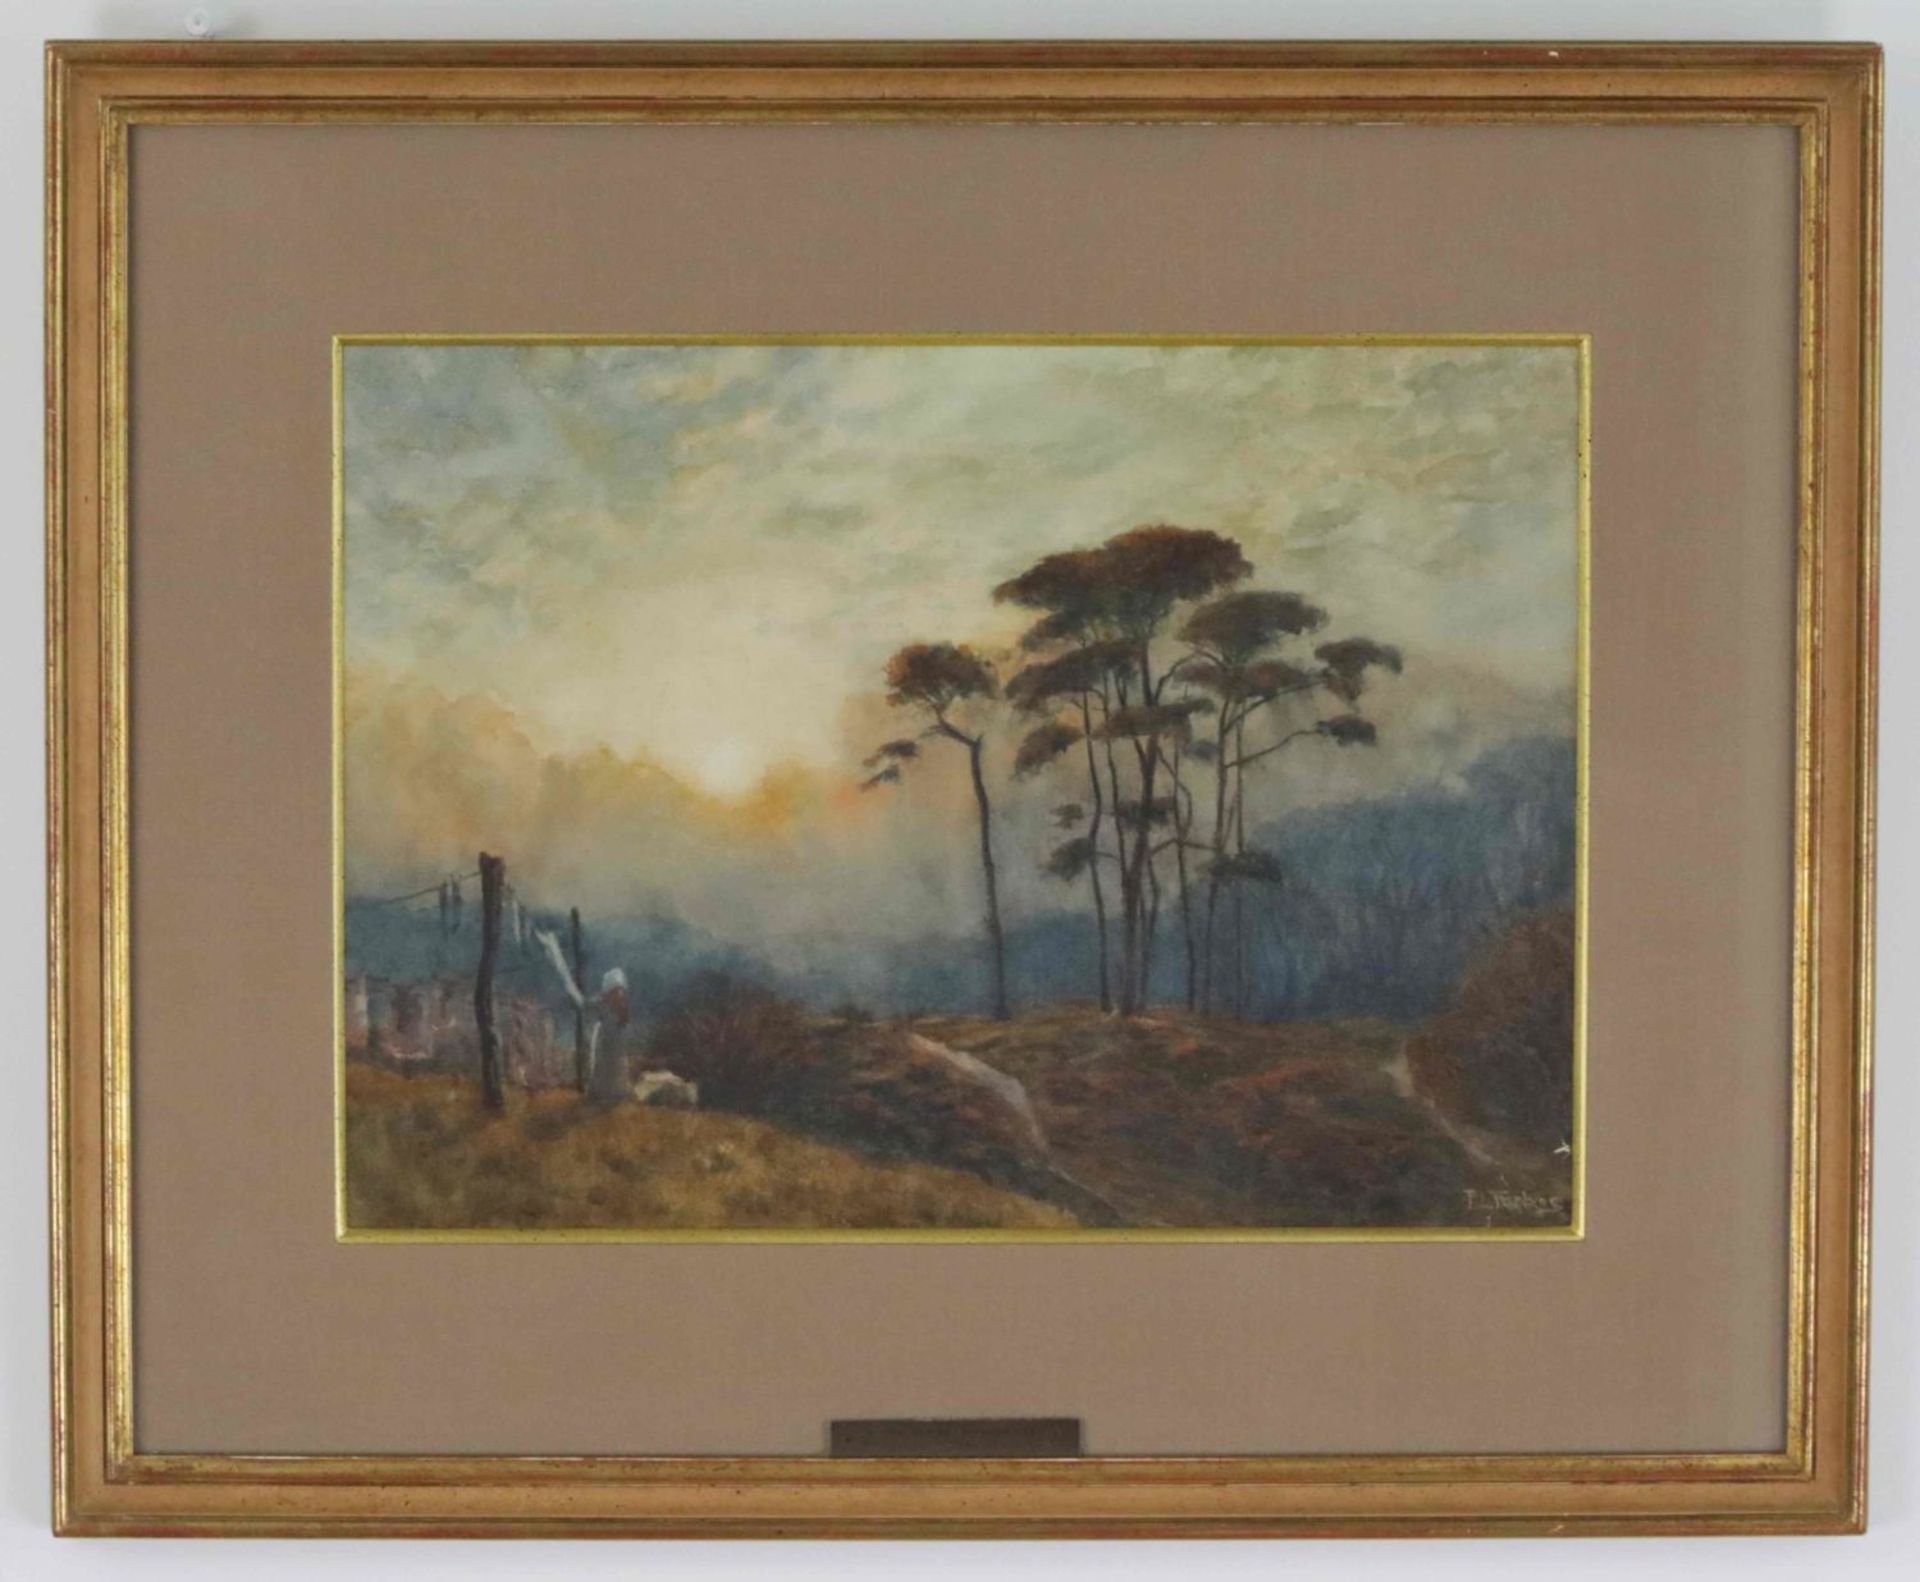 Landscape watercolour on paper, Patrick Lewis Forbes (1893-1914)